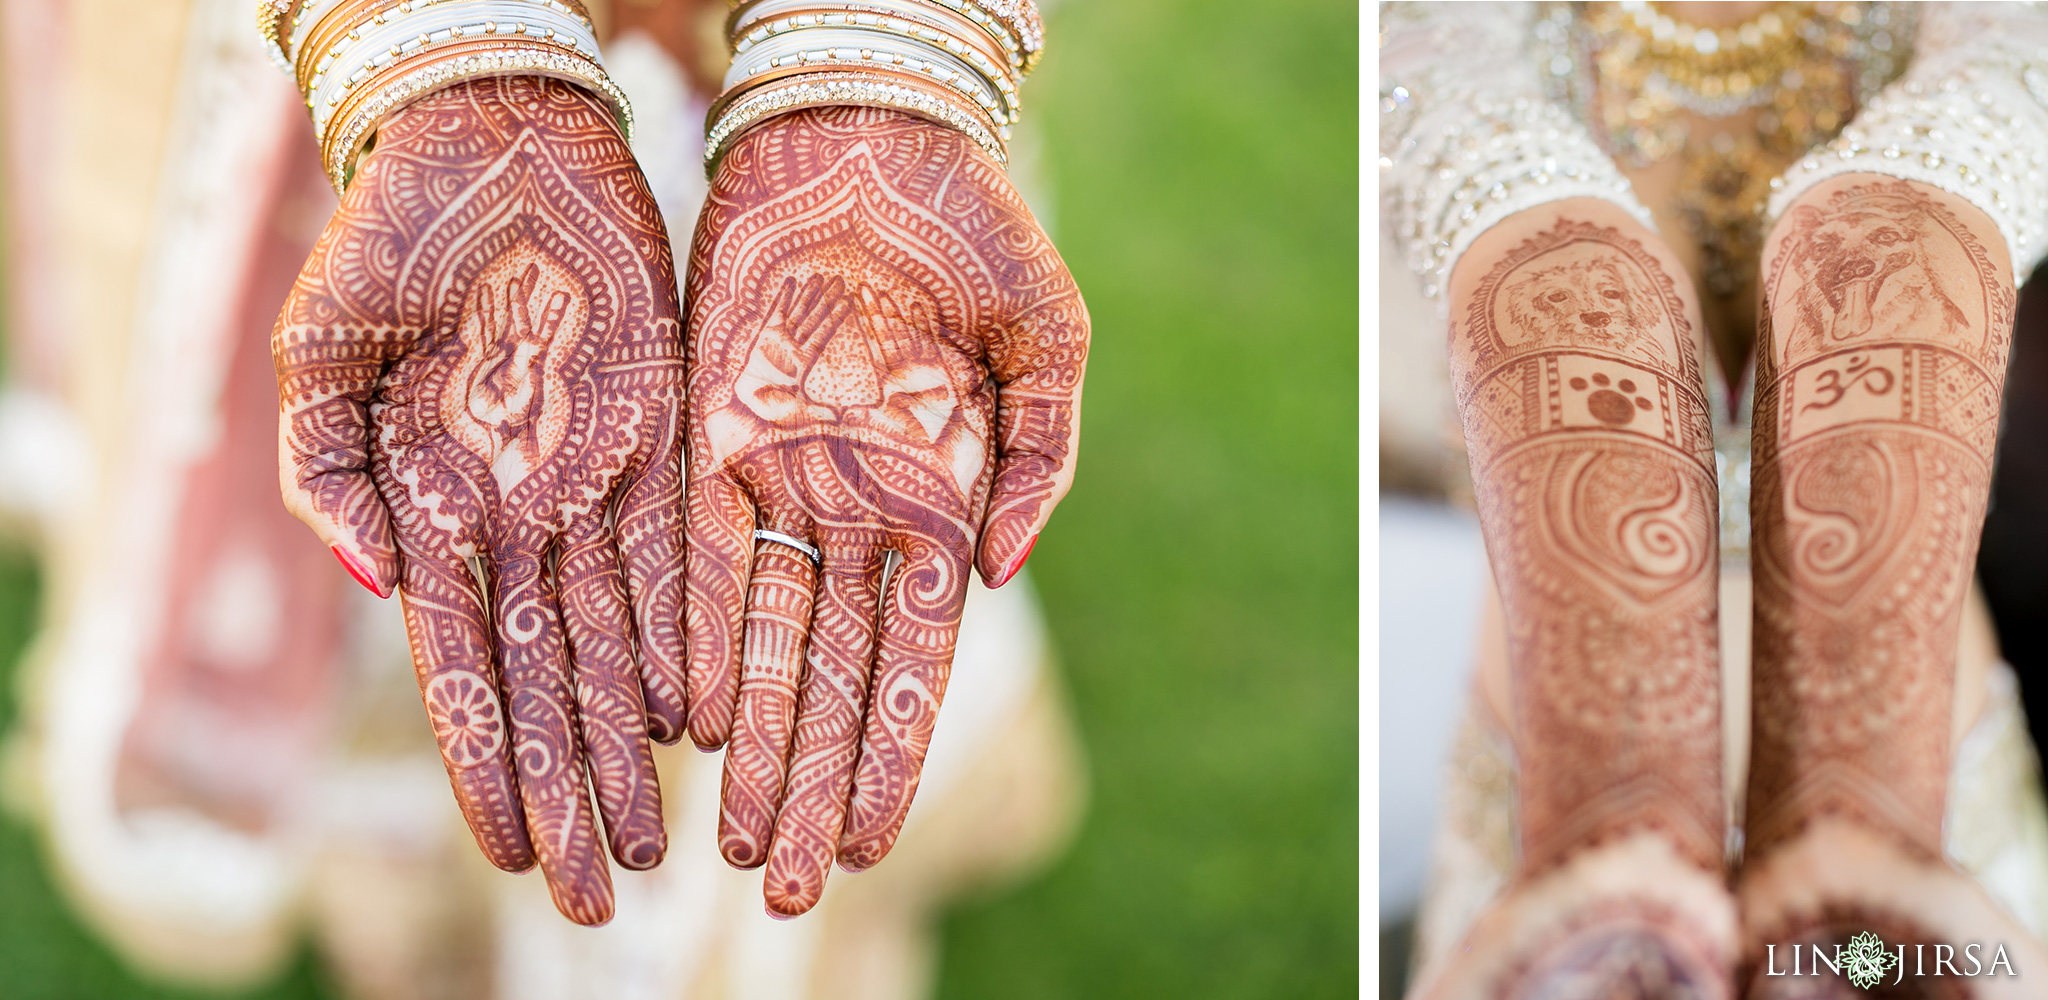 Mehndi artist asma | Wedding mehndi designs, Beautiful mehndi design, Mehndi  designs